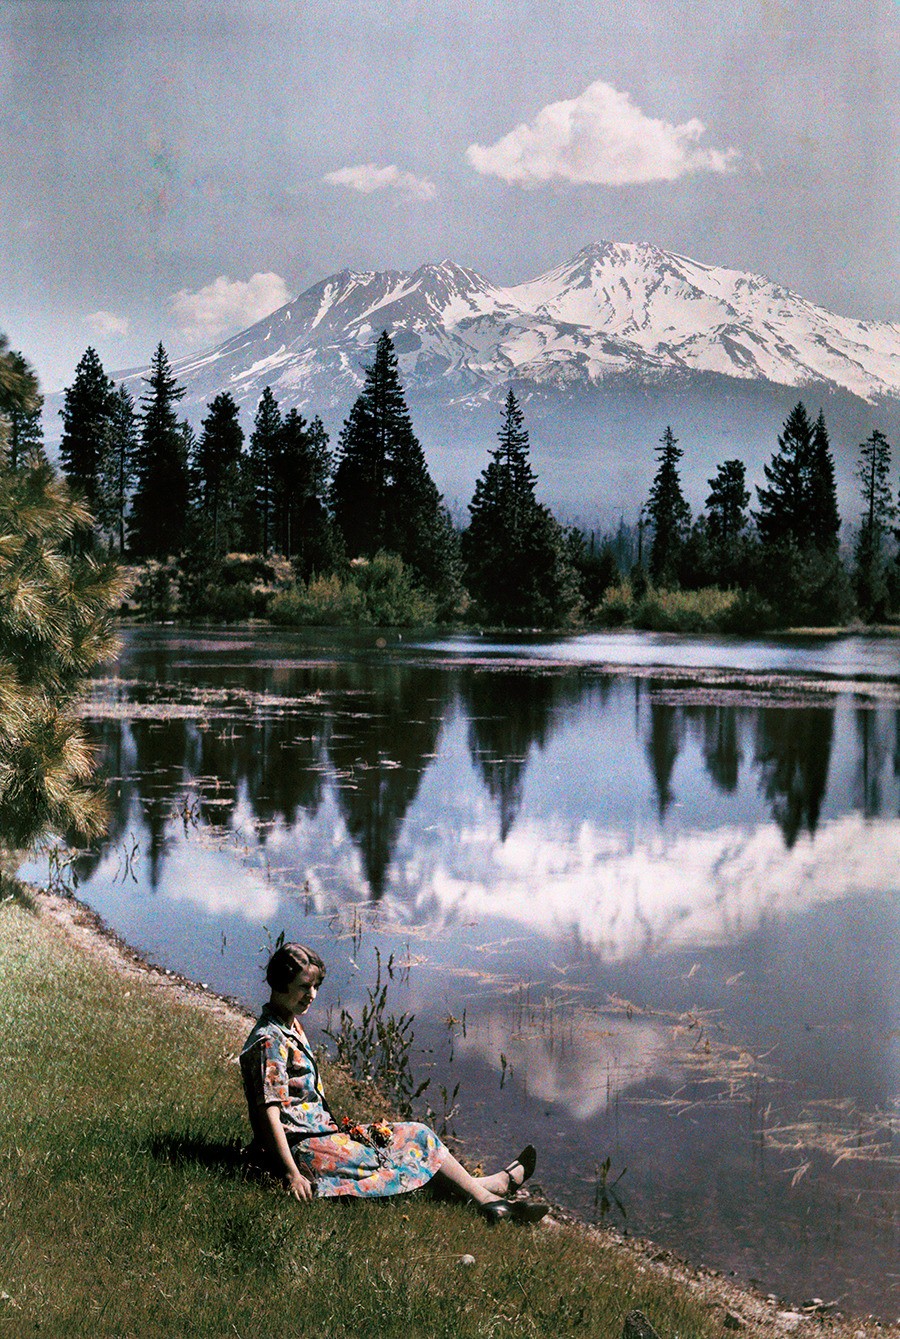 Озеро и заснеженные горы, Калифорния, 1929. Автохром, фотограф Чарльз Мартин